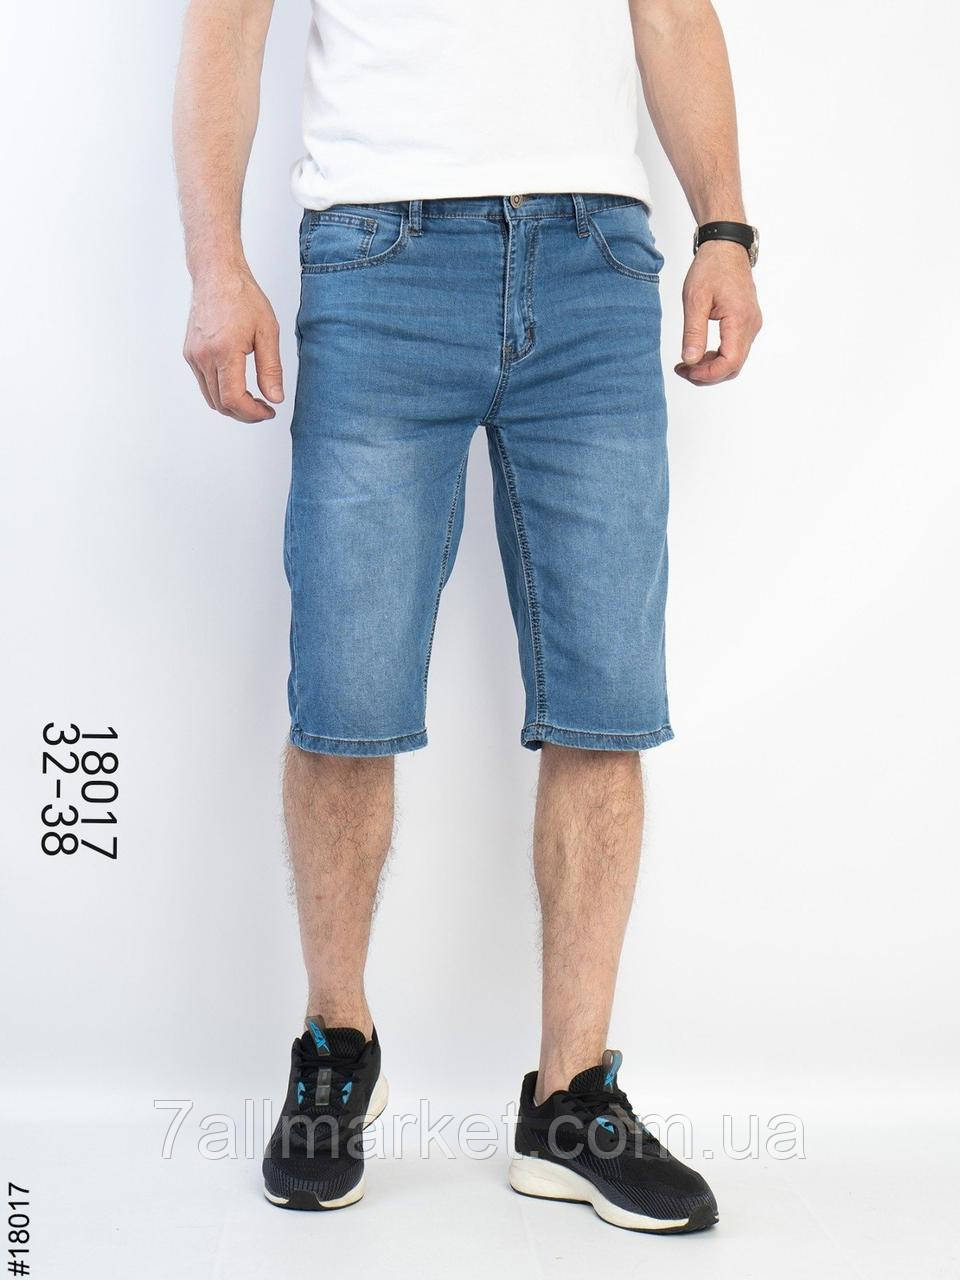 Шорти чоловічі джинсові розміри 32-38 "ROOS" купити недорого від прямого постачальник